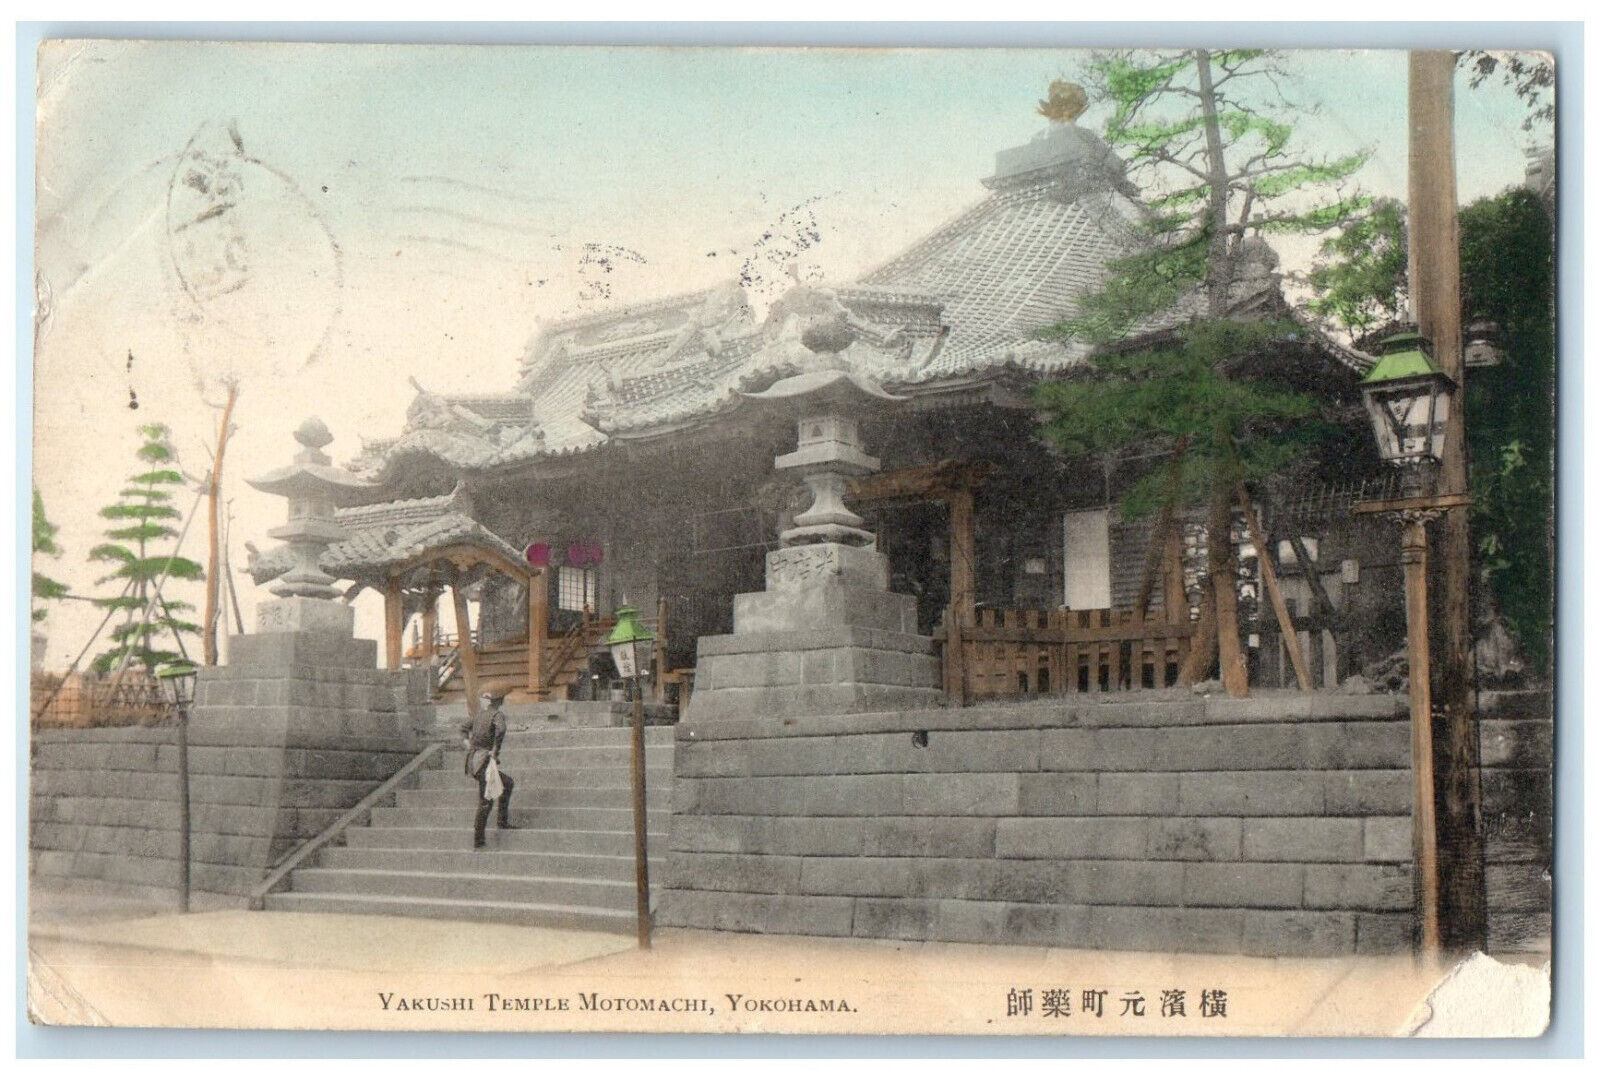 1906 Yakushi Temple Motomachi Yokohama Japan Stairway View Postcard